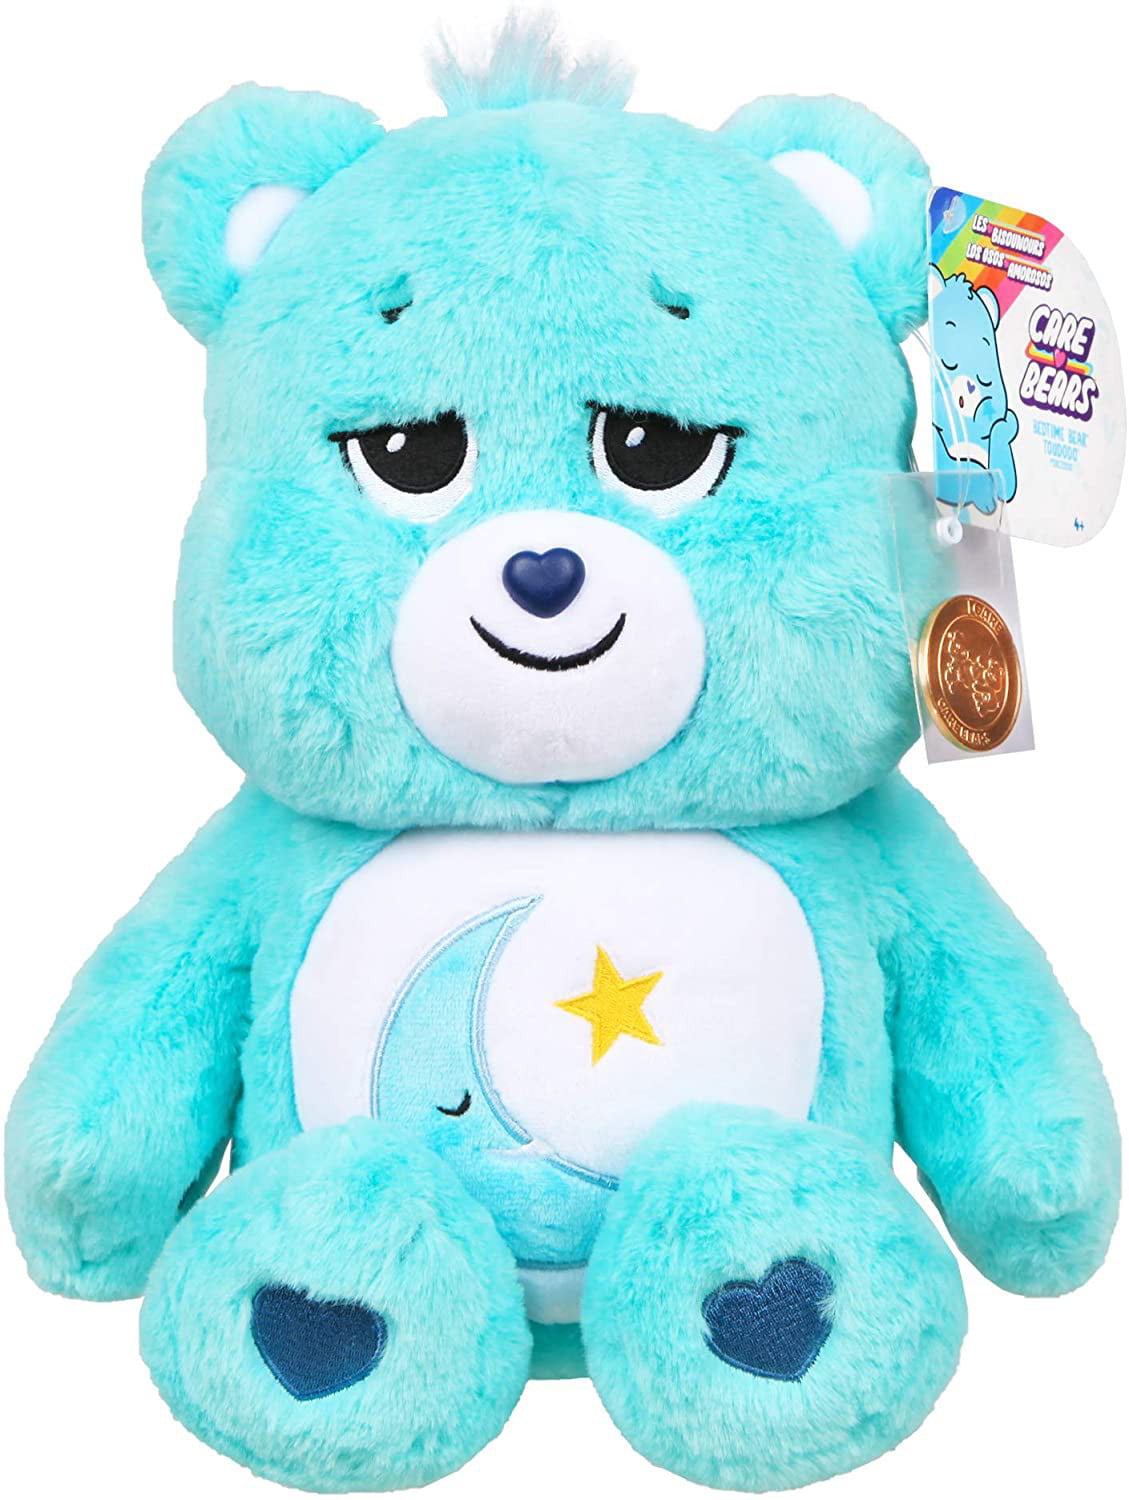 NEW 2020 Care Bears Blue 14" Plush Grumpy Bear Soft Huggable Material 